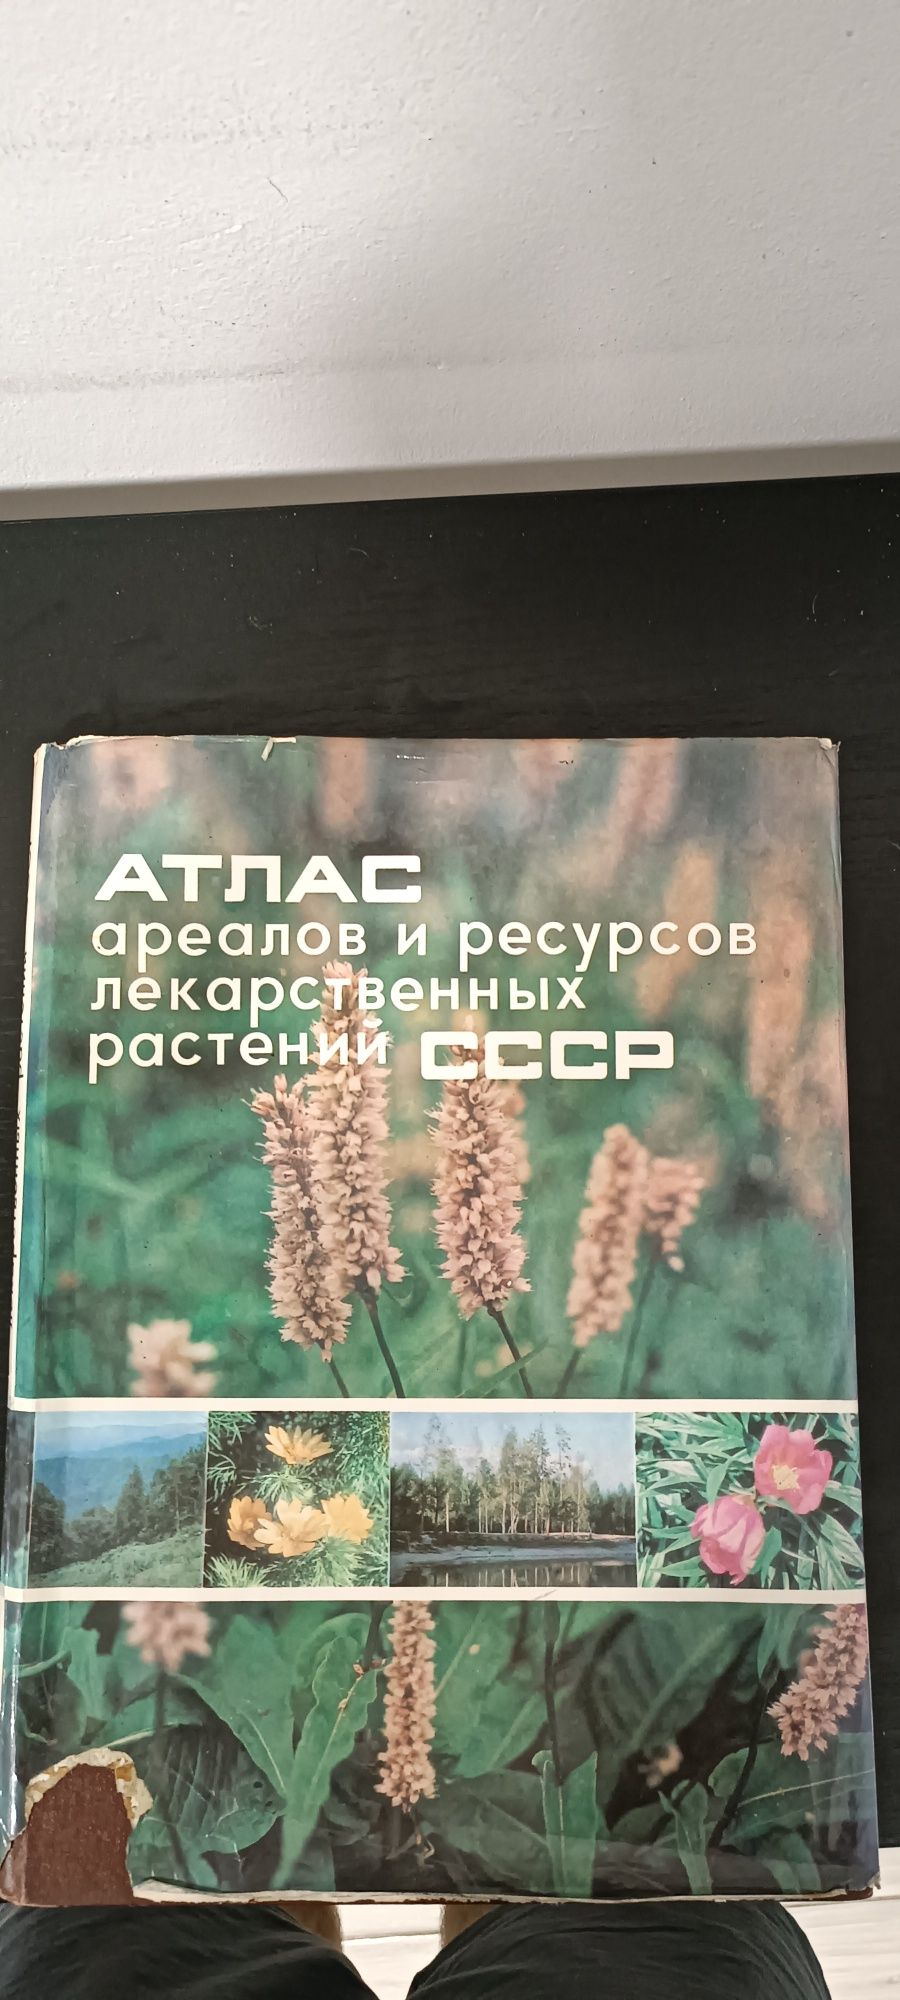 Продам книгу ссср "AТЛАС ареалов и ресурсов лекарственных растений ".